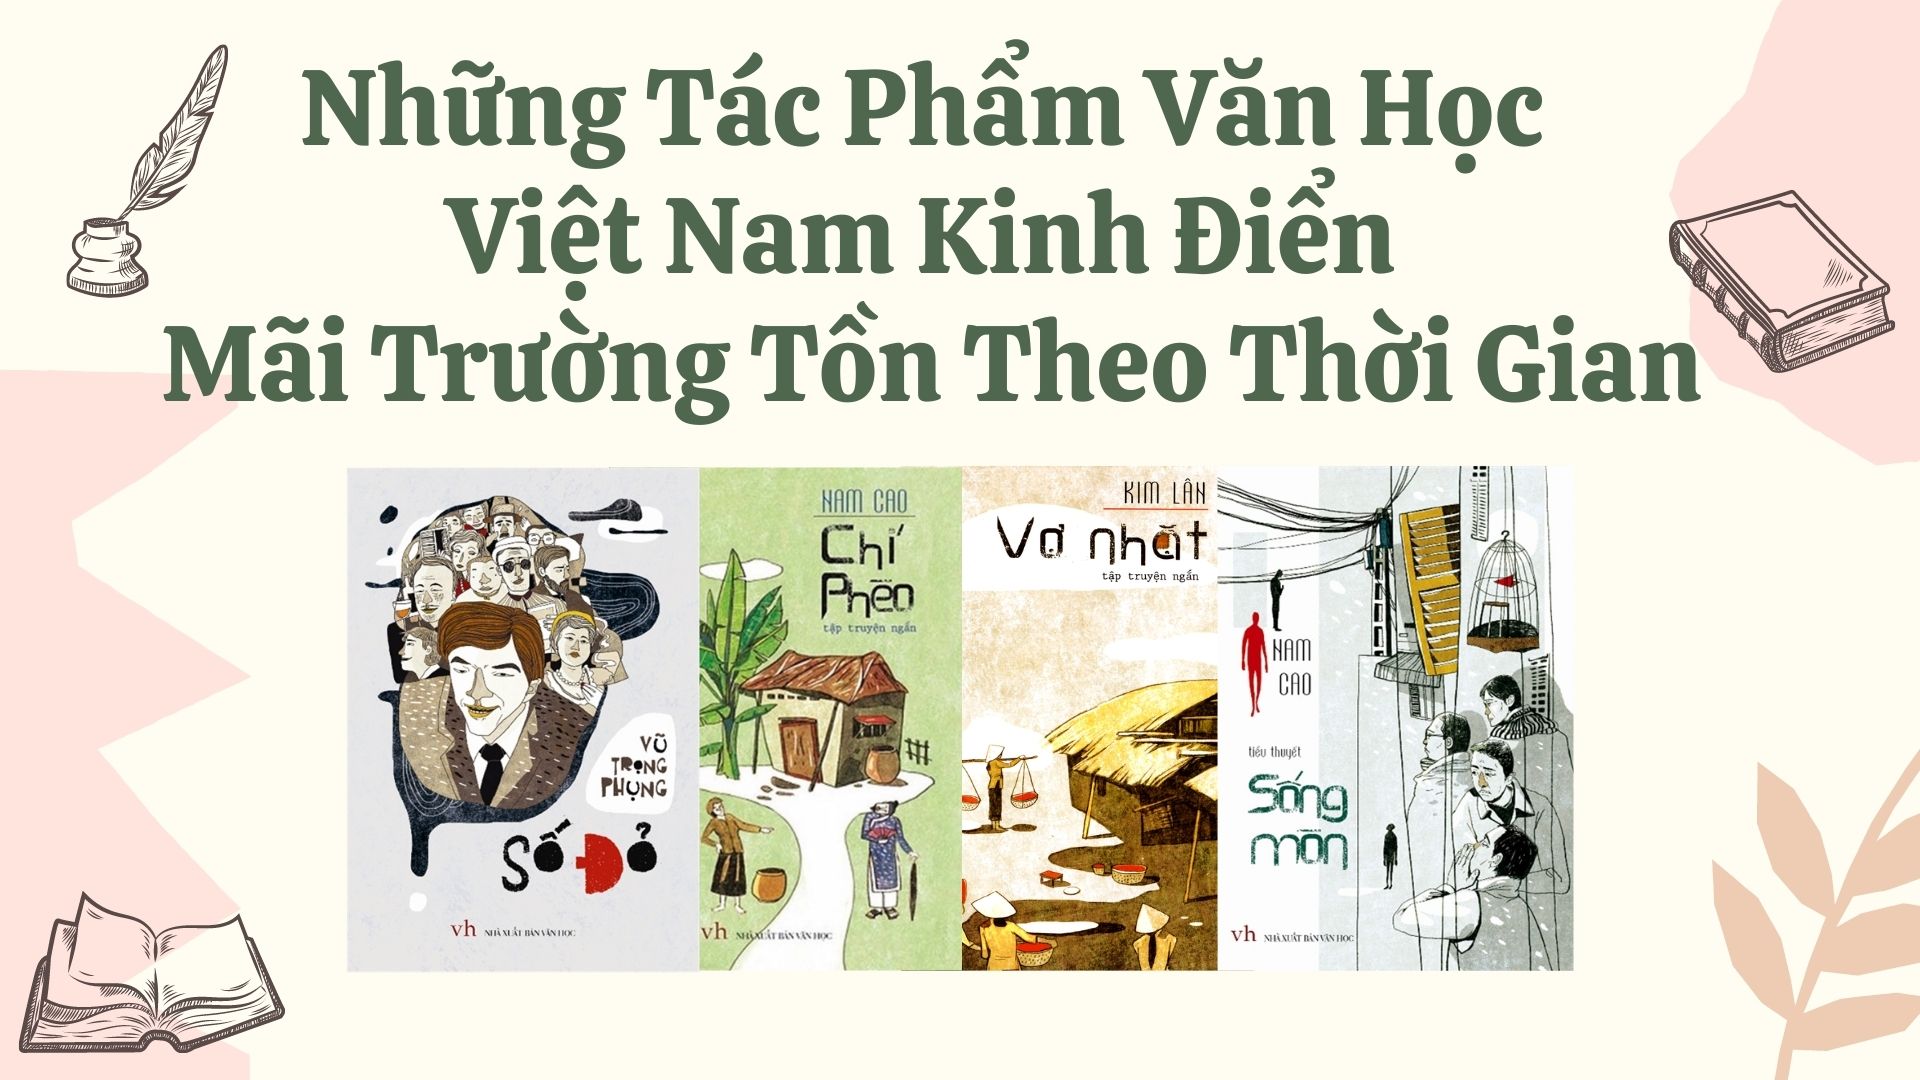 Những Tác Phẩm Văn Học Việt Nam Kinh Điển Mãi Trường Tồn Theo Thời Gian